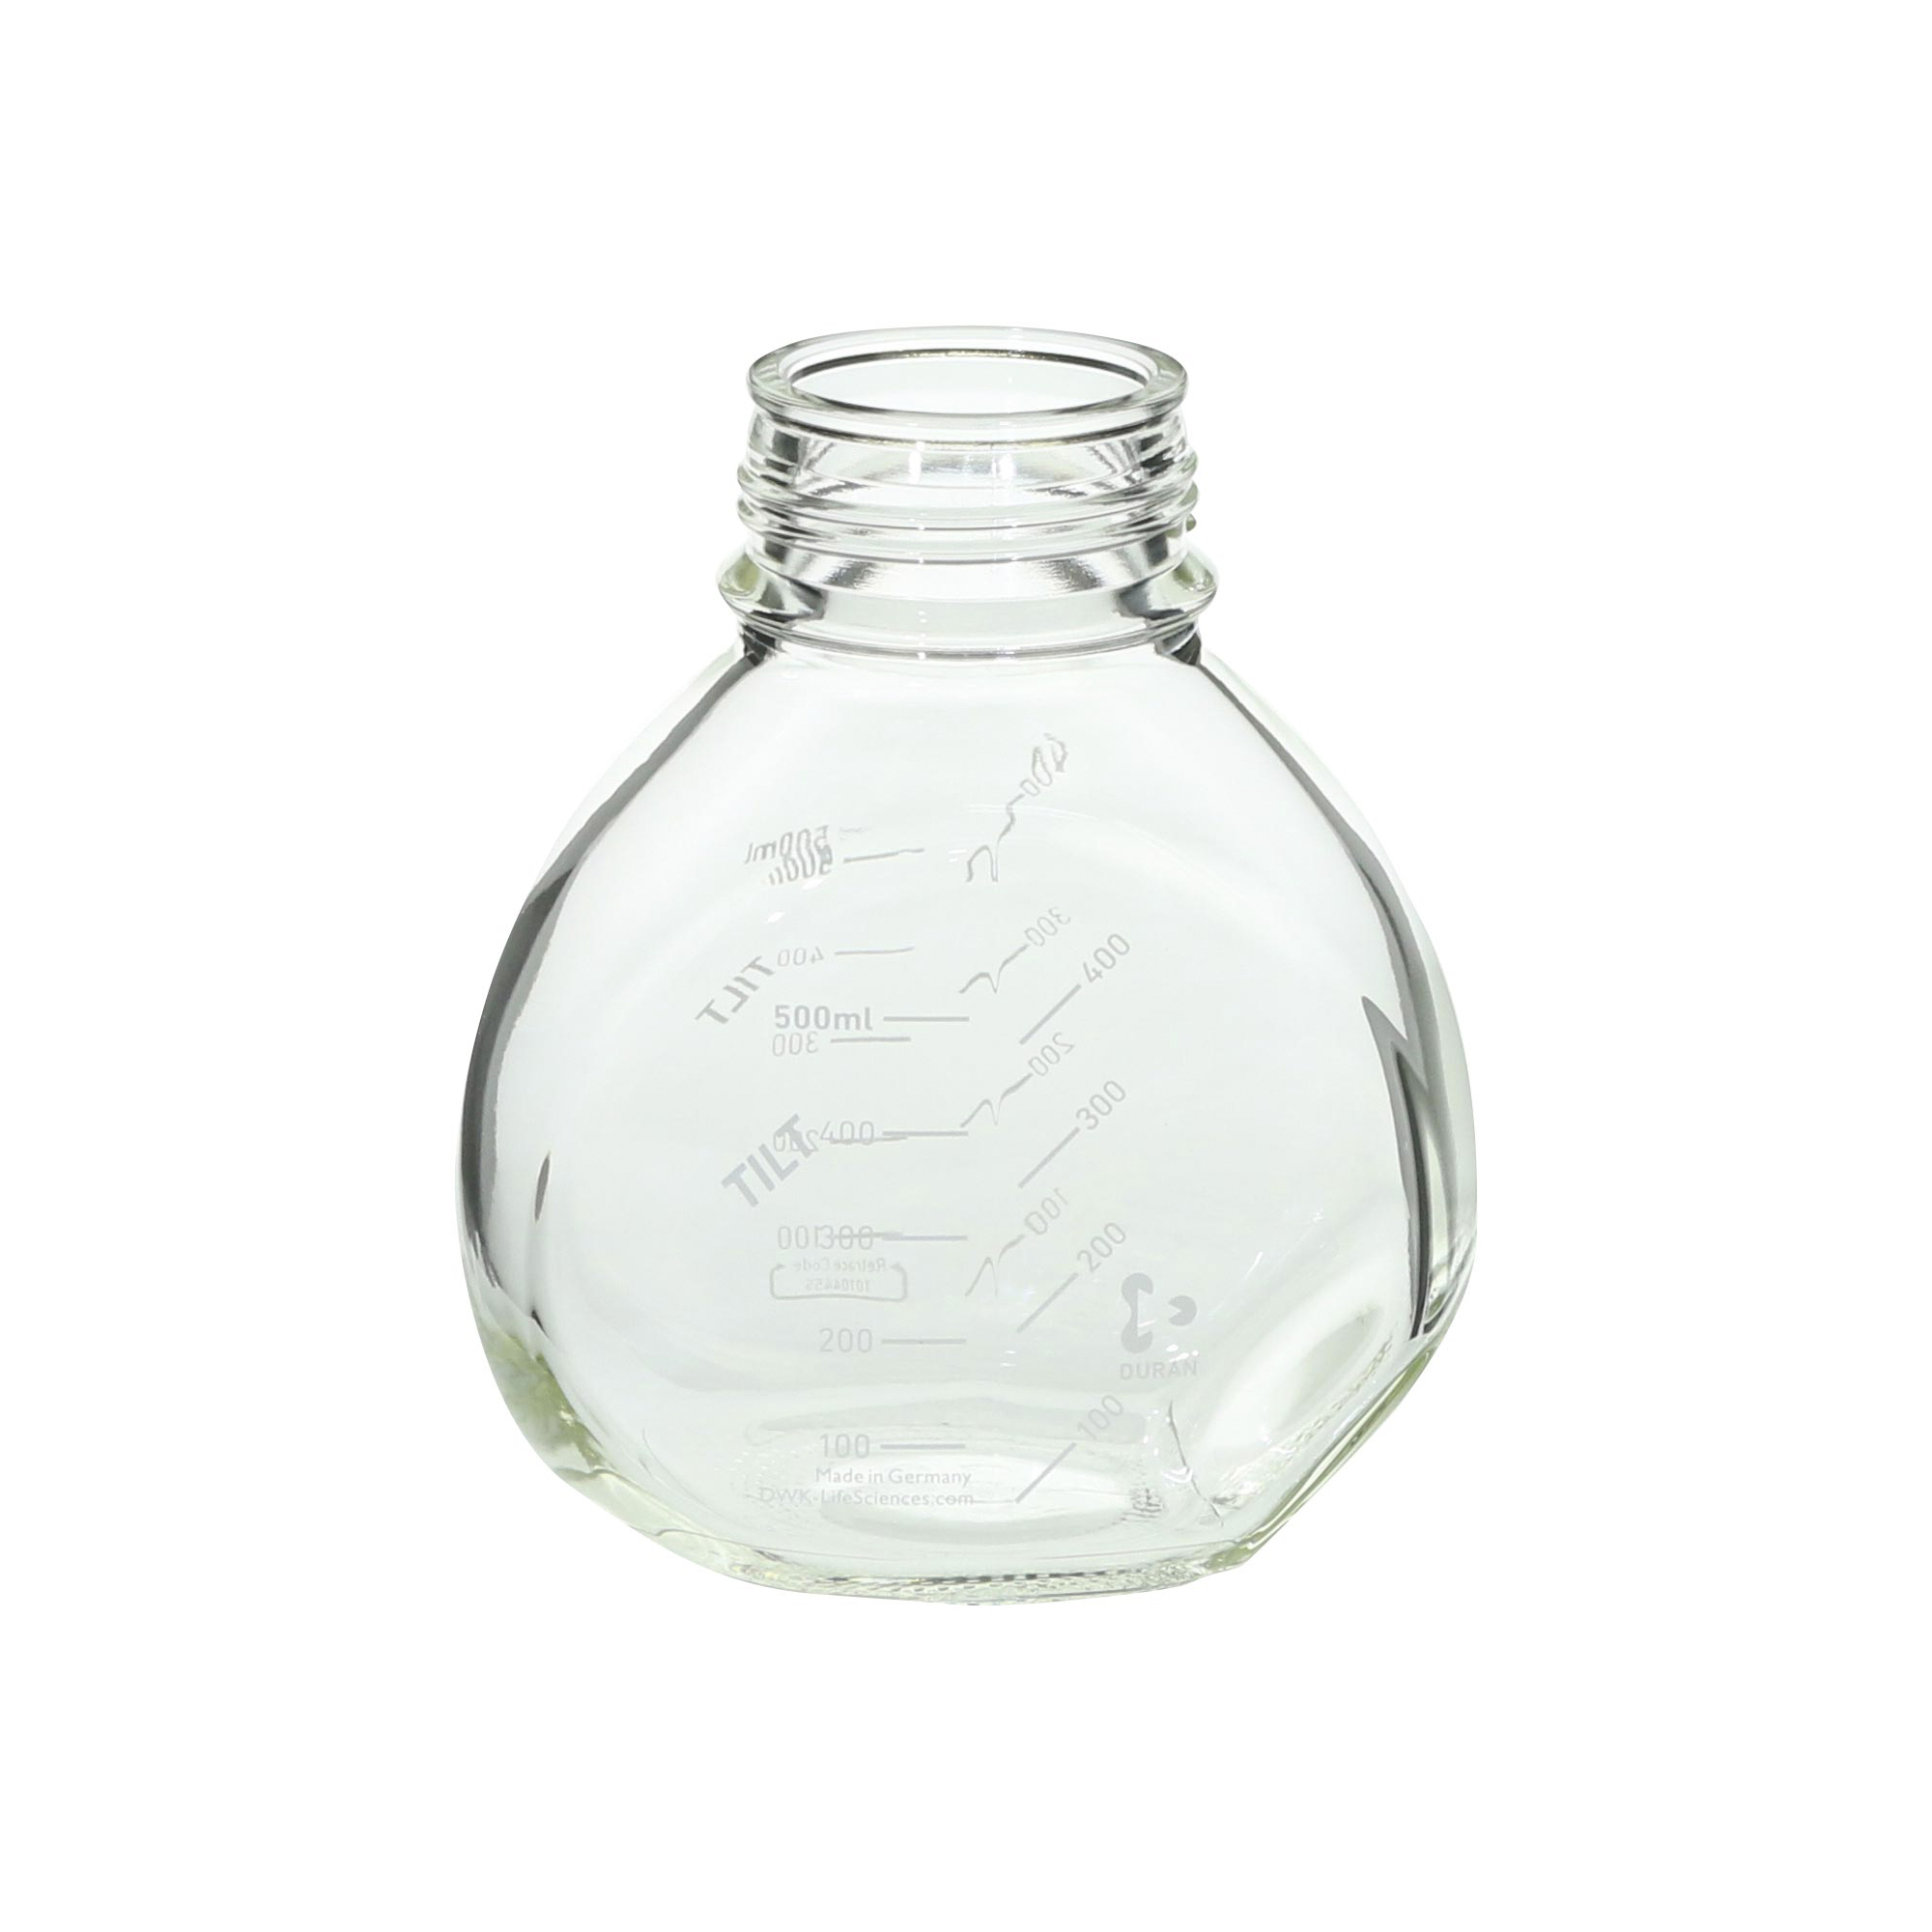 【受注停止】017400-500A DURAN チルトボトル TILT Bottle 500mL(4個) 柴田科学(SIBATA)